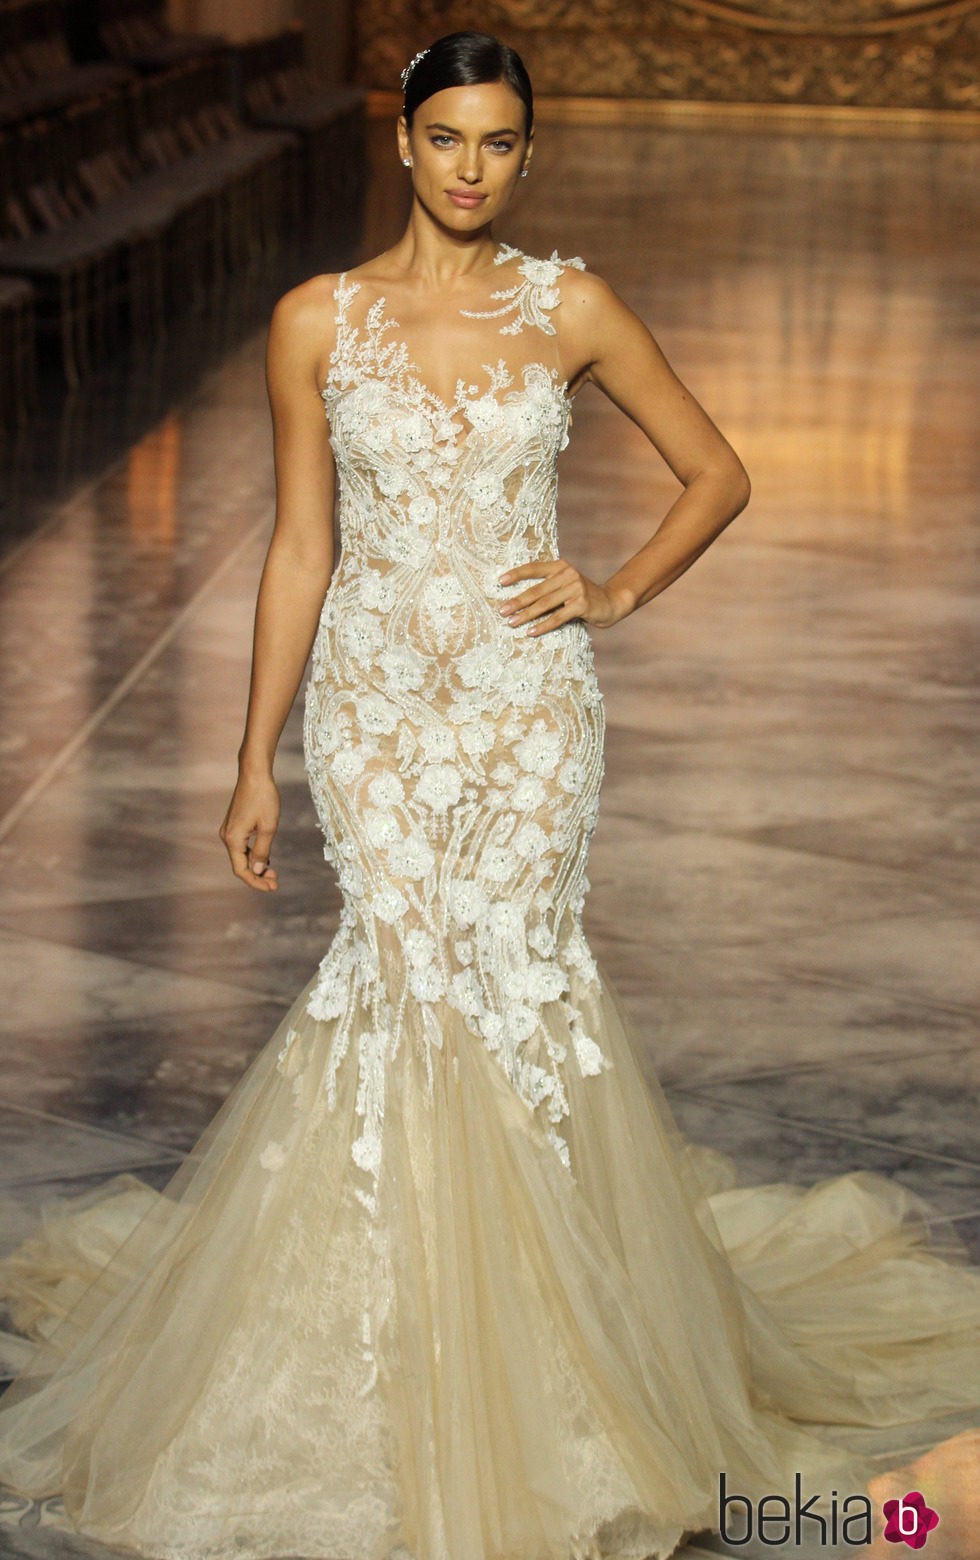 Irina Shayk desfila con un vestido de Pronovias en la Barcelona Bridal Week